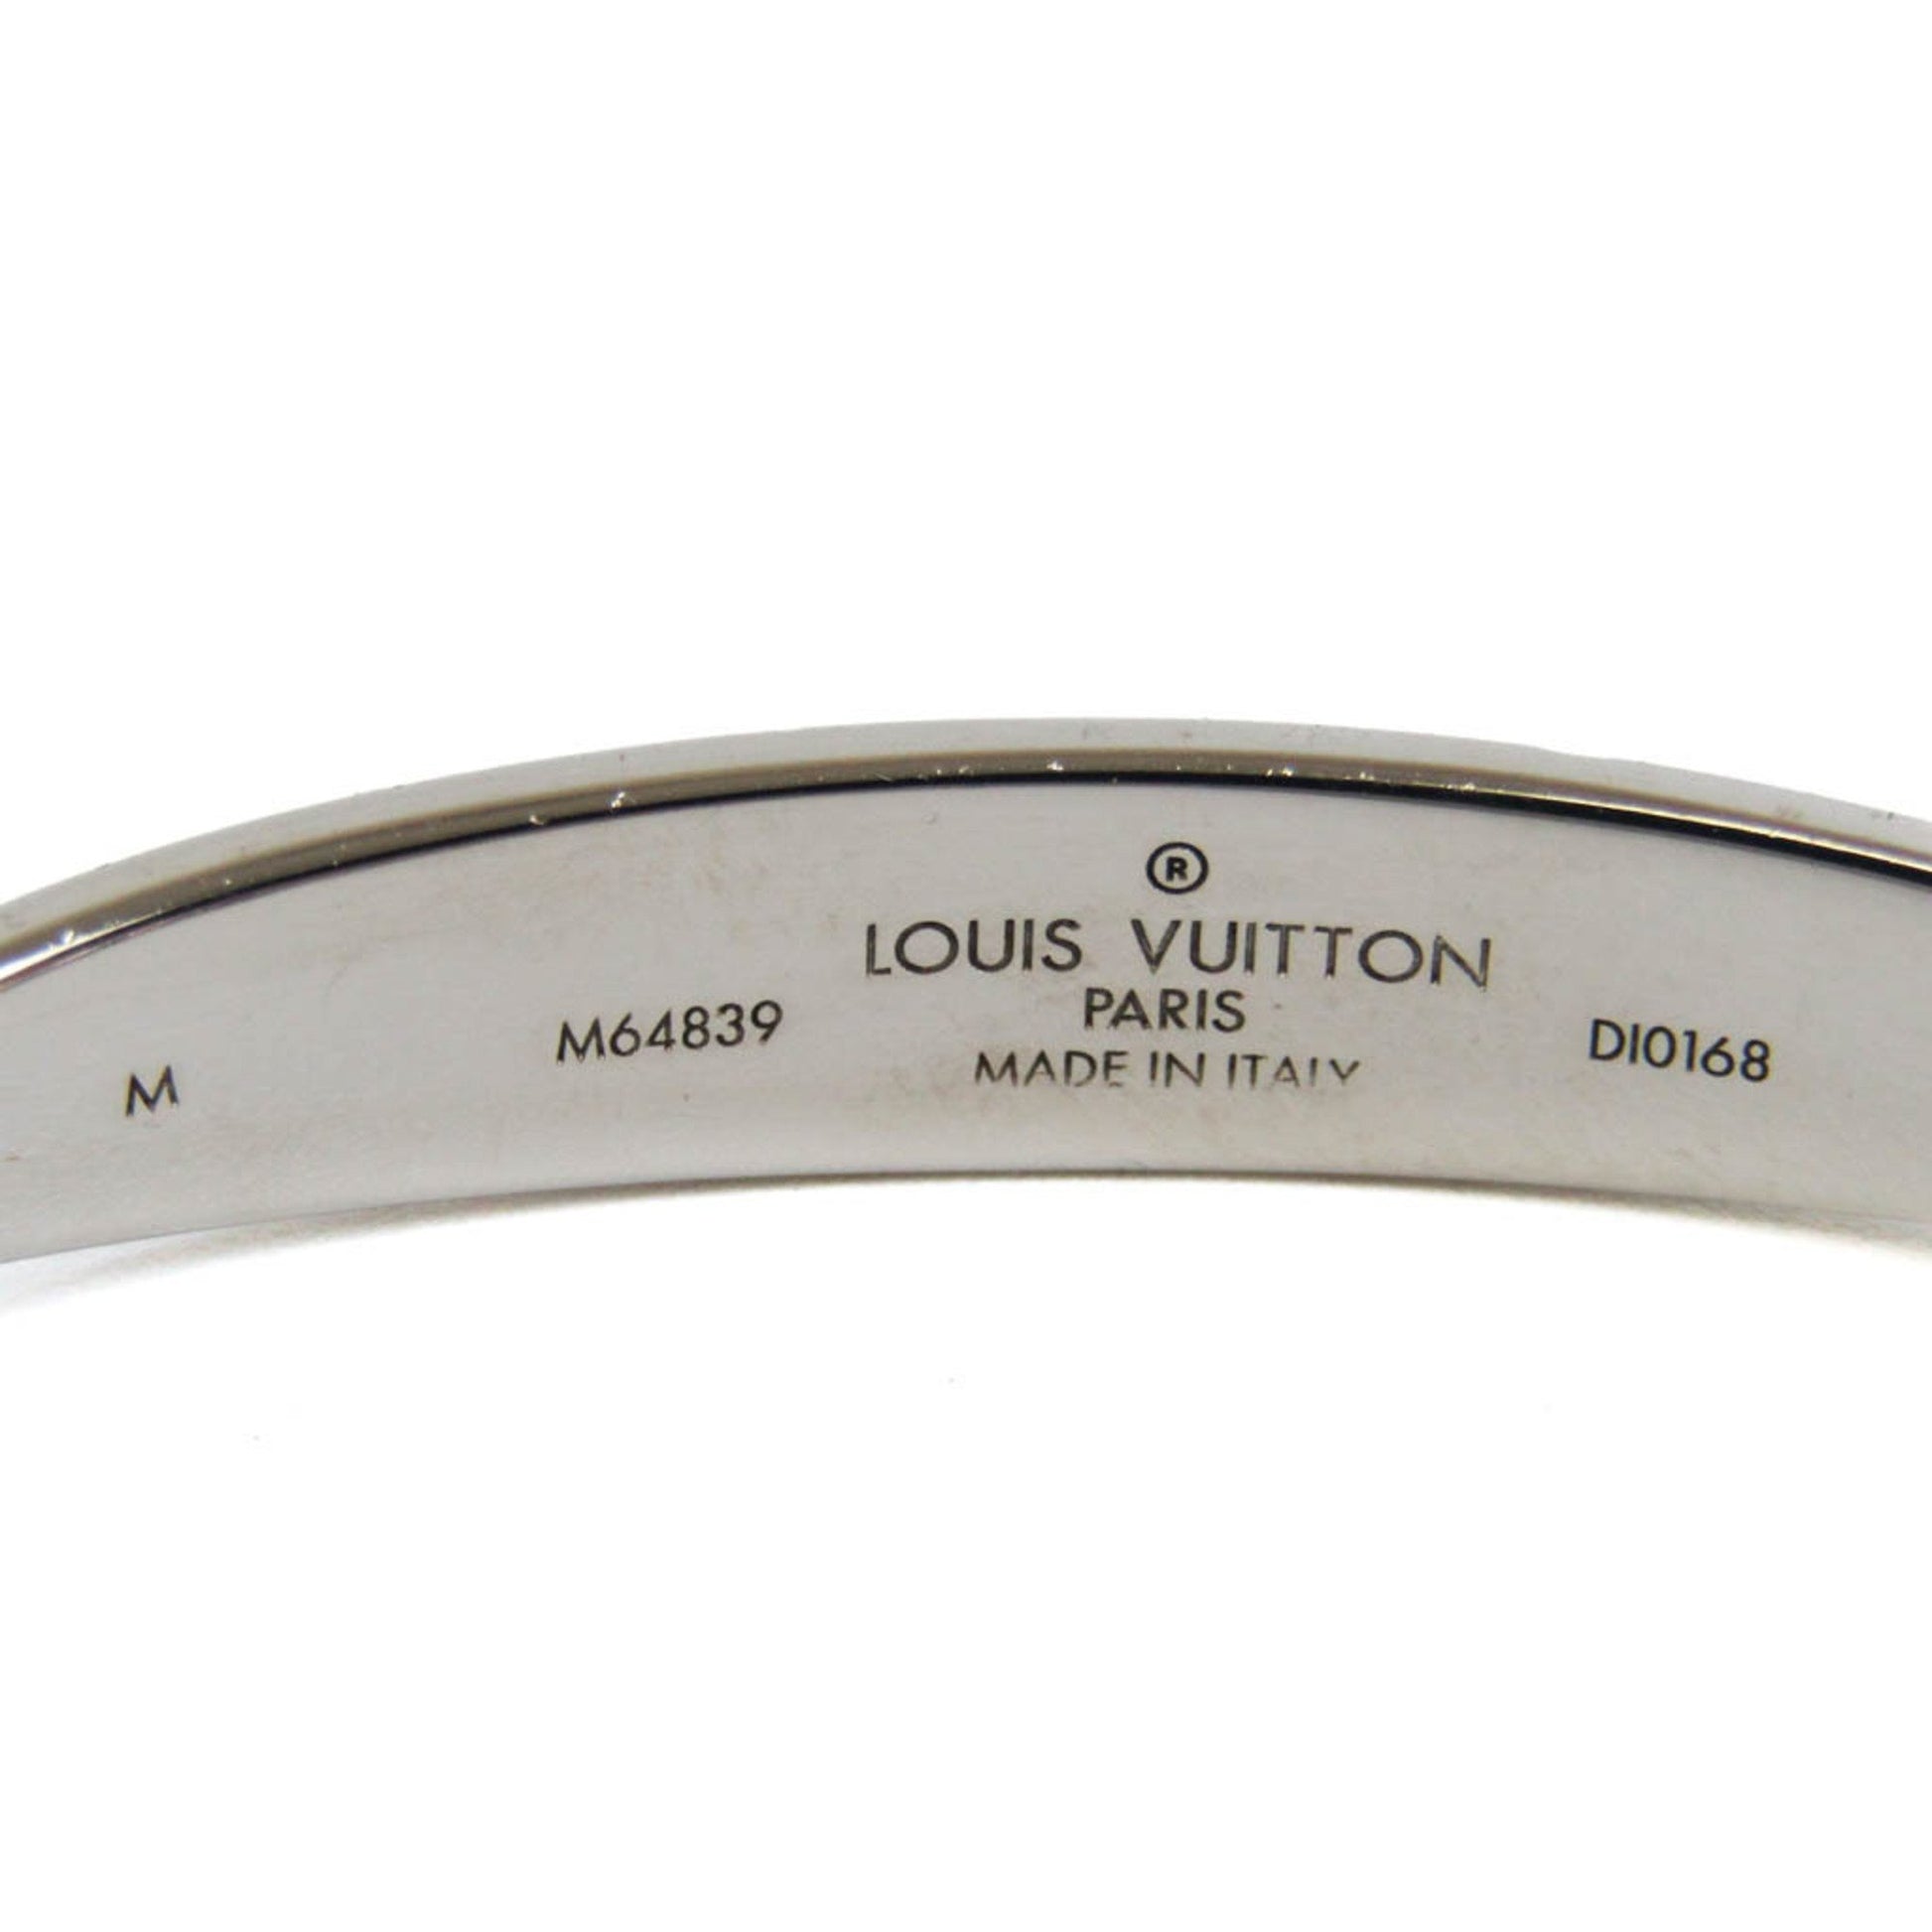 Louis Vuitton, Jewelry, Louis Vuitton Jonc Monogram M64839 Metal Bangle  Silver